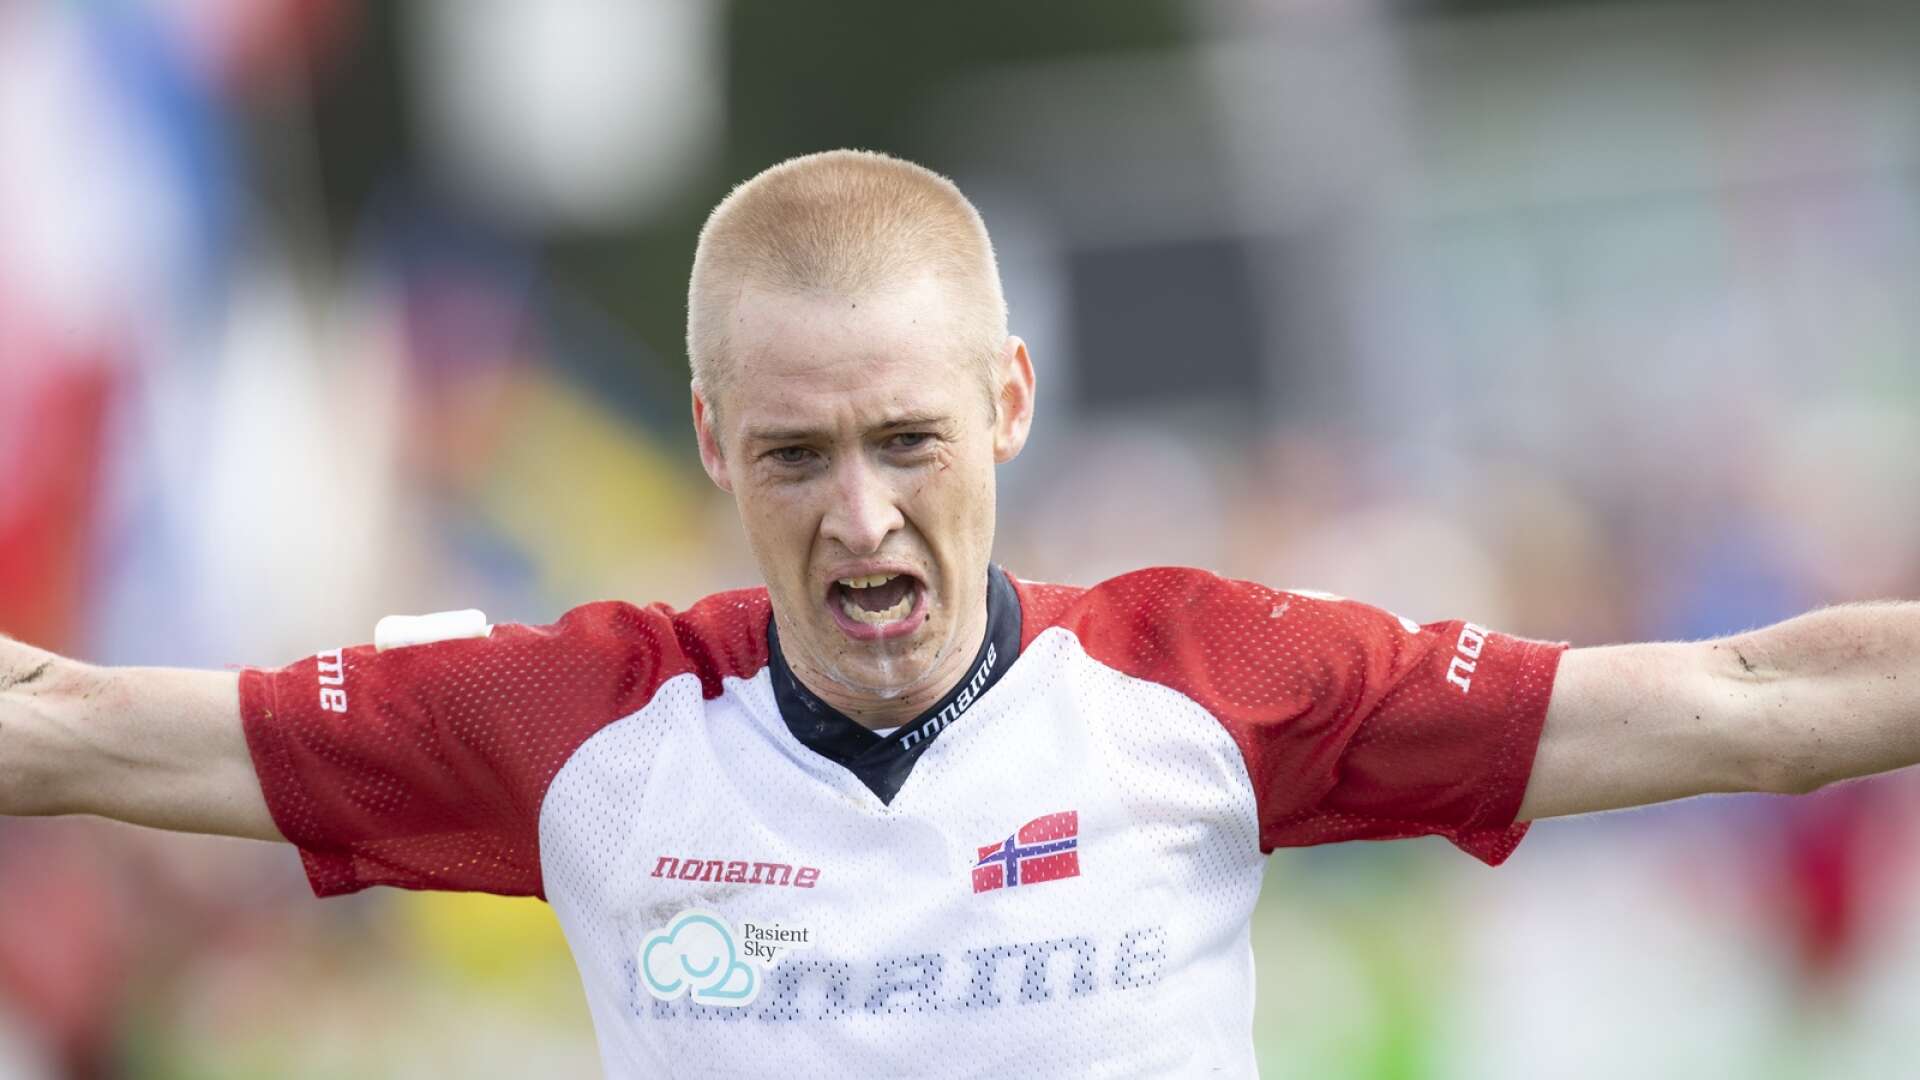 Norrmannen Olav Lundanes har tio VM-guld i orientering – åtta individuellt och två i stafett. I helgen kommer han till Ed för att springa Götalandsmästerskapen.